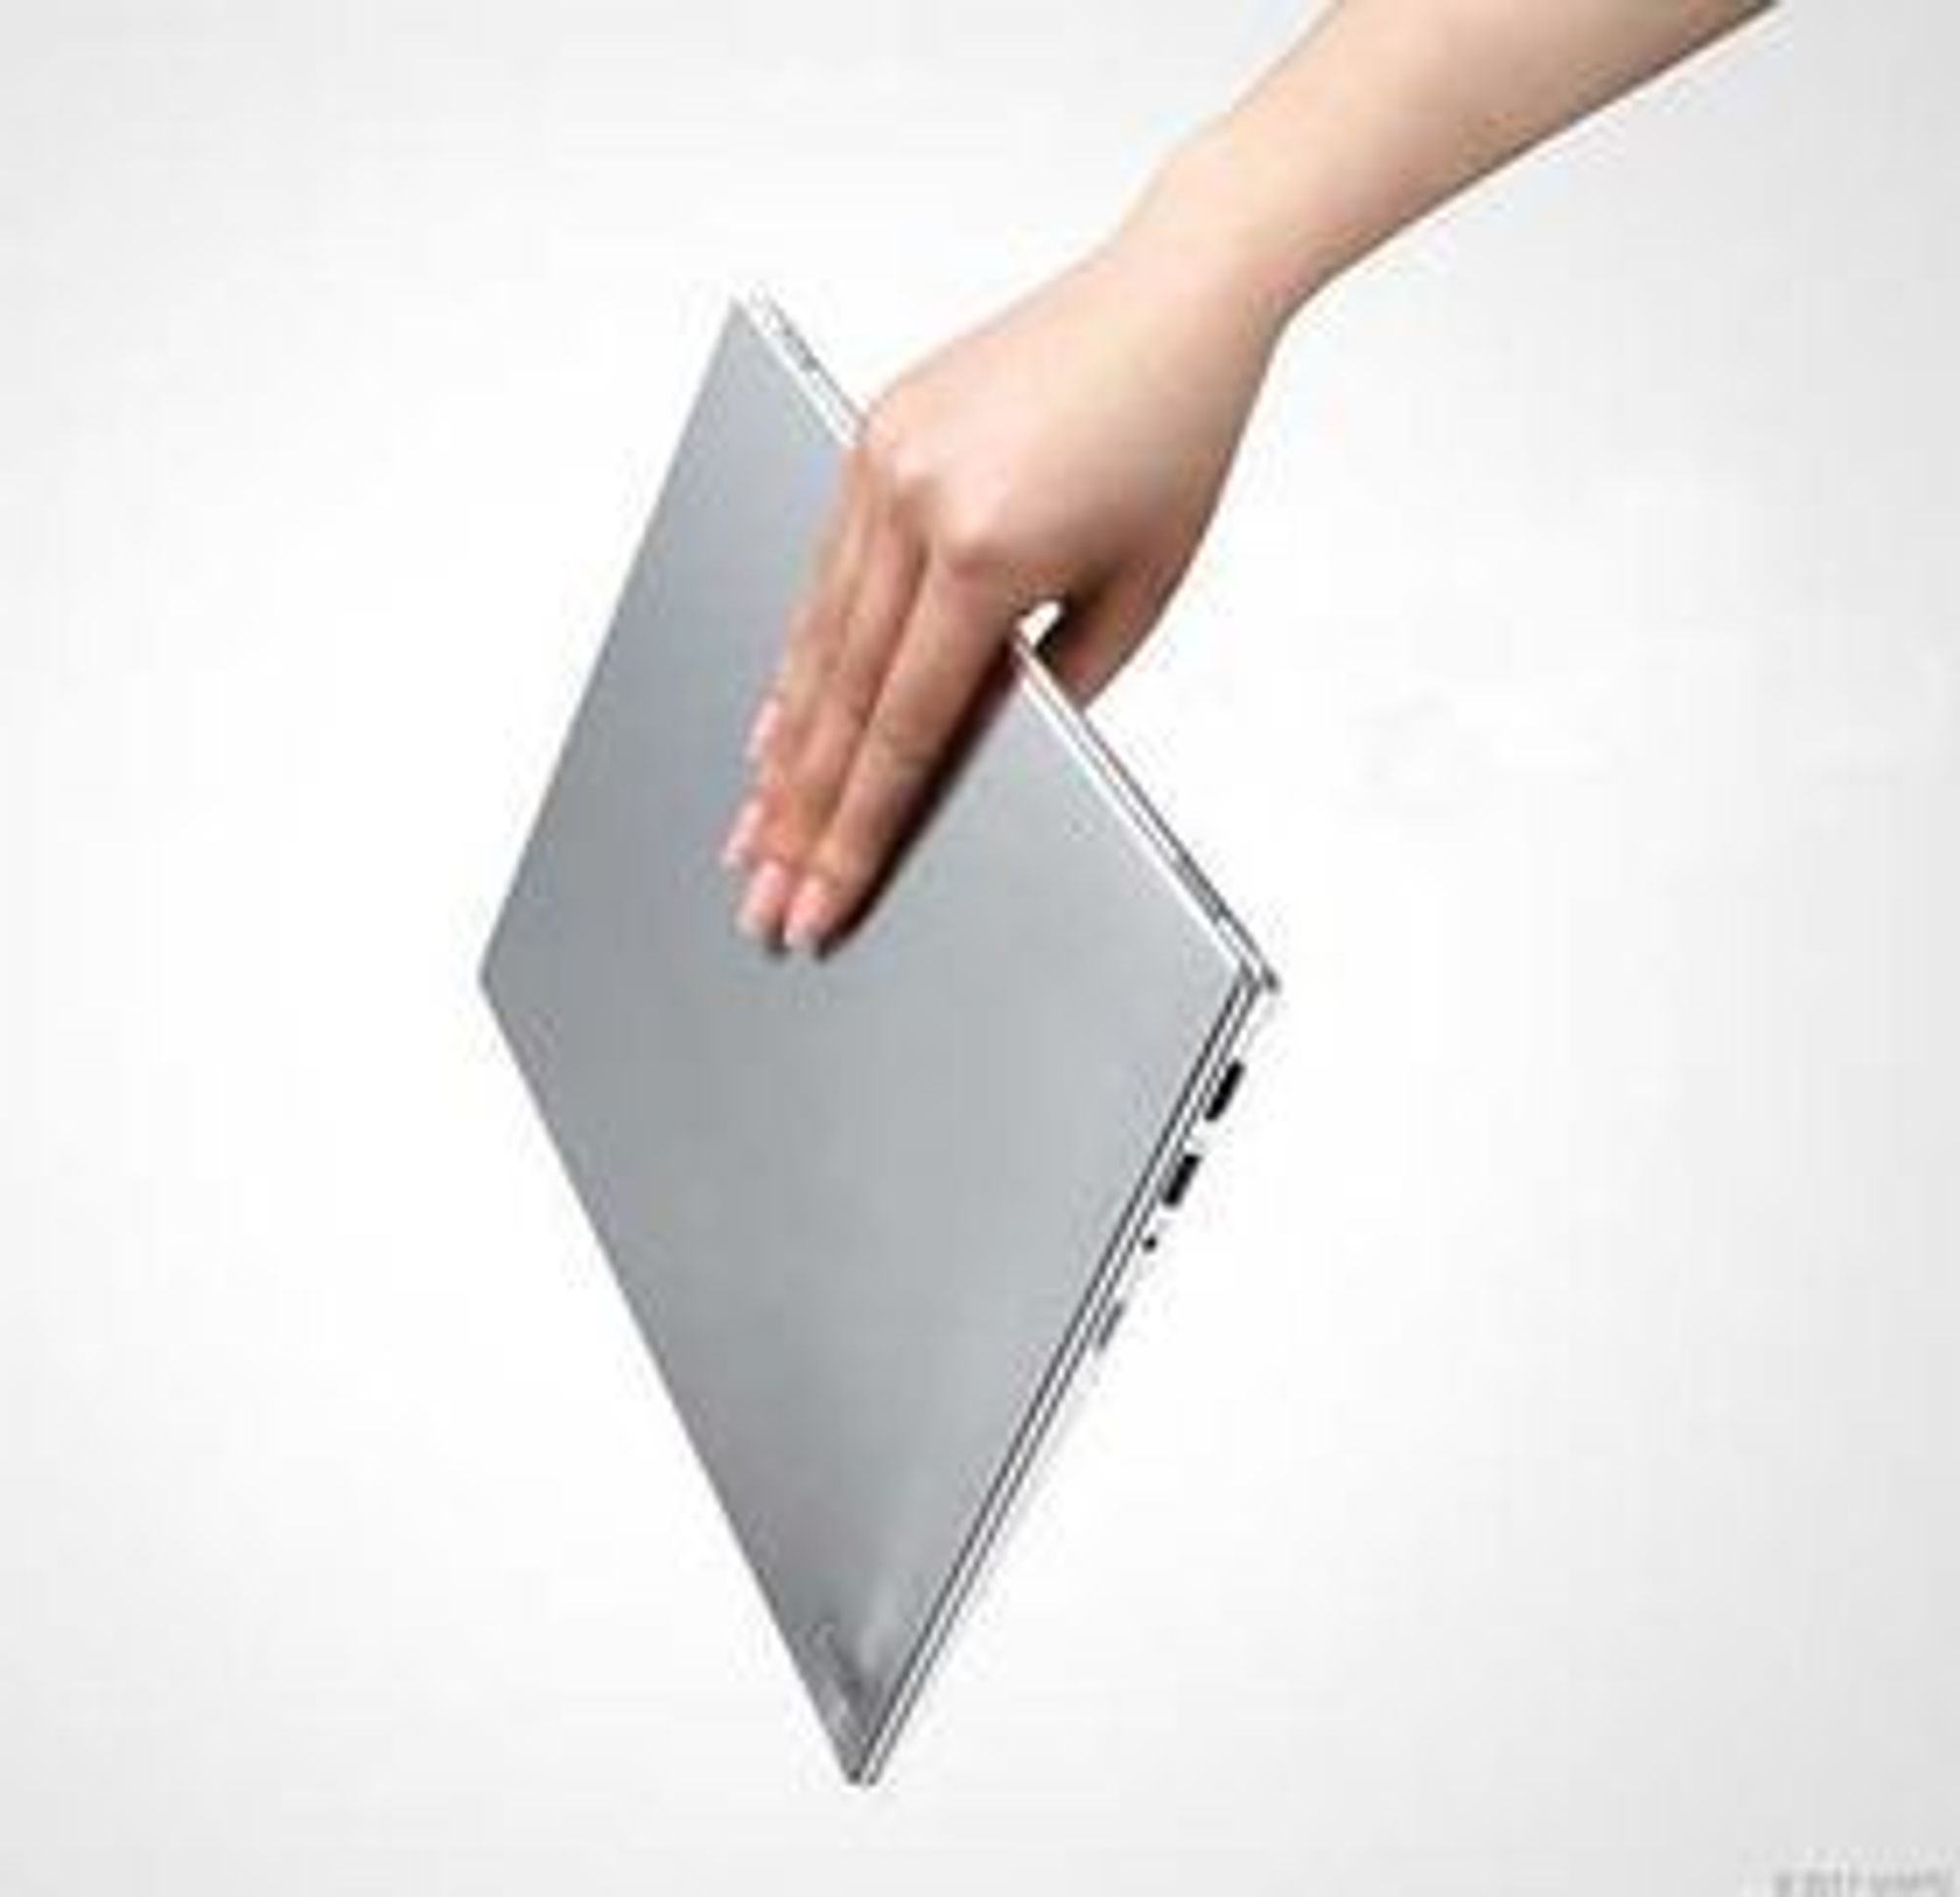 LG lanserte rett før CES sin nye Ultrabook z330. Den tynneste Core i7-maskinen i verden... 